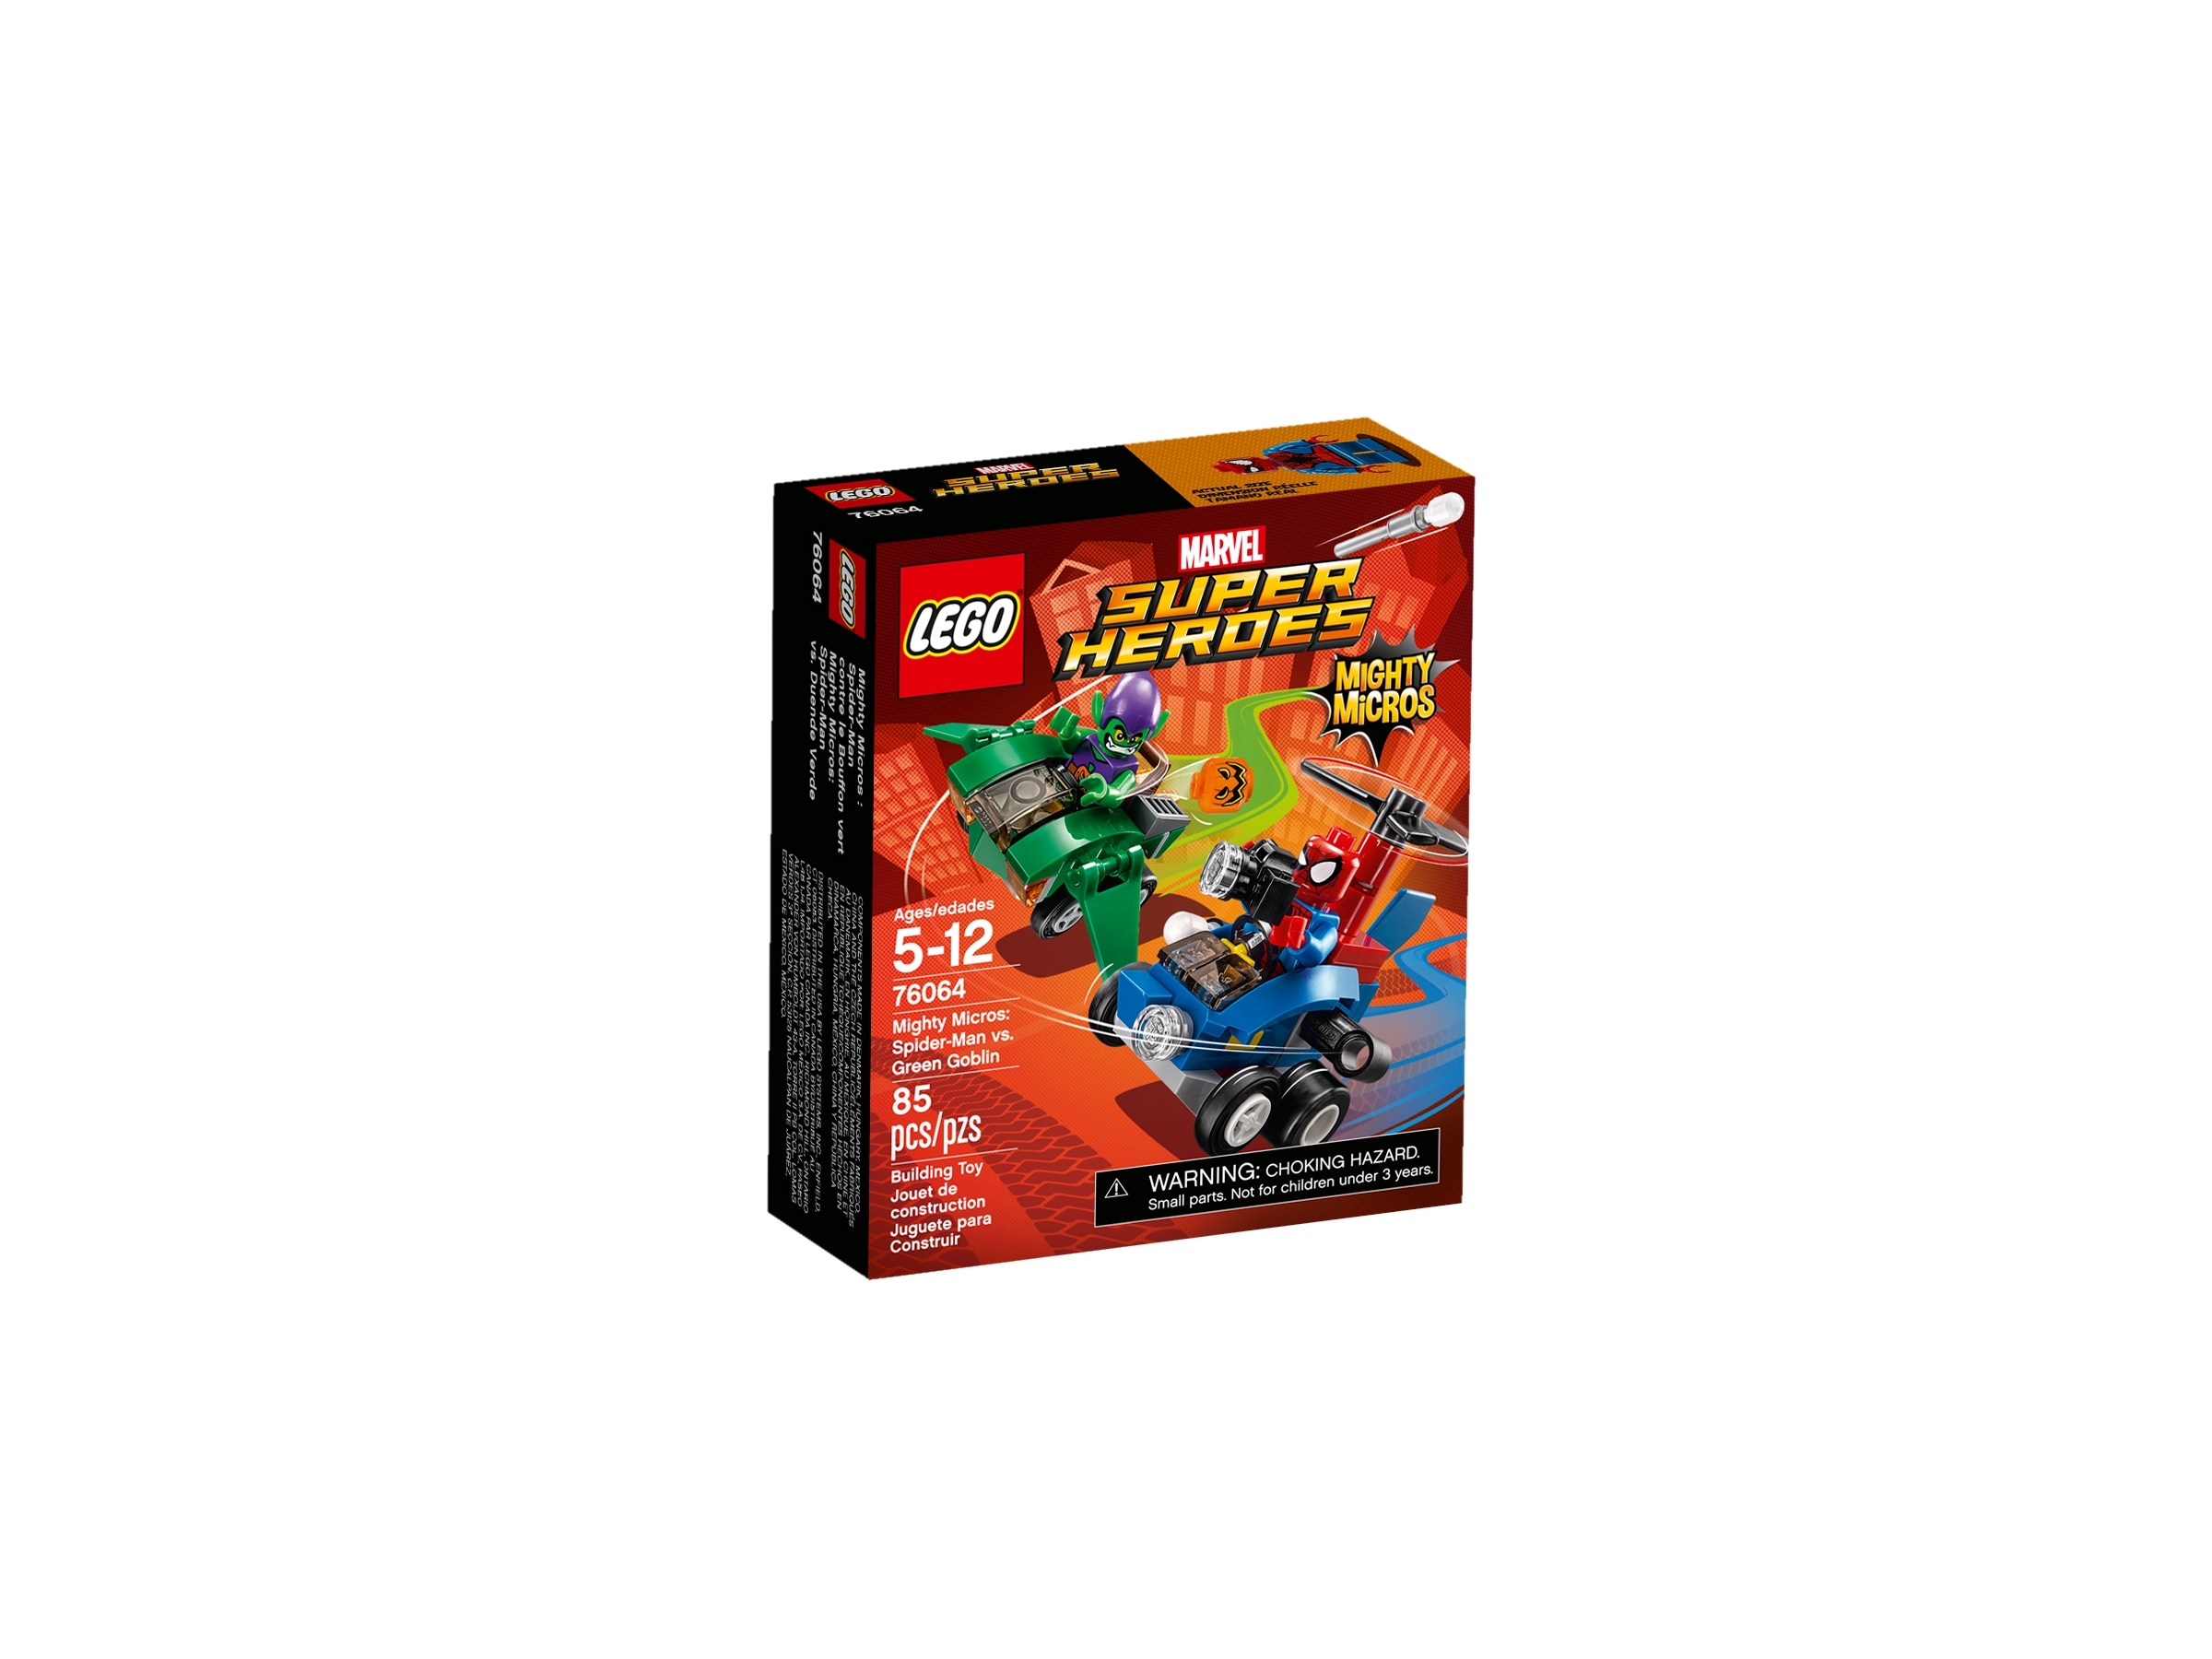 Lego Spider-Man Green Goblin Mighty Micros Minifigure SH249 EUC